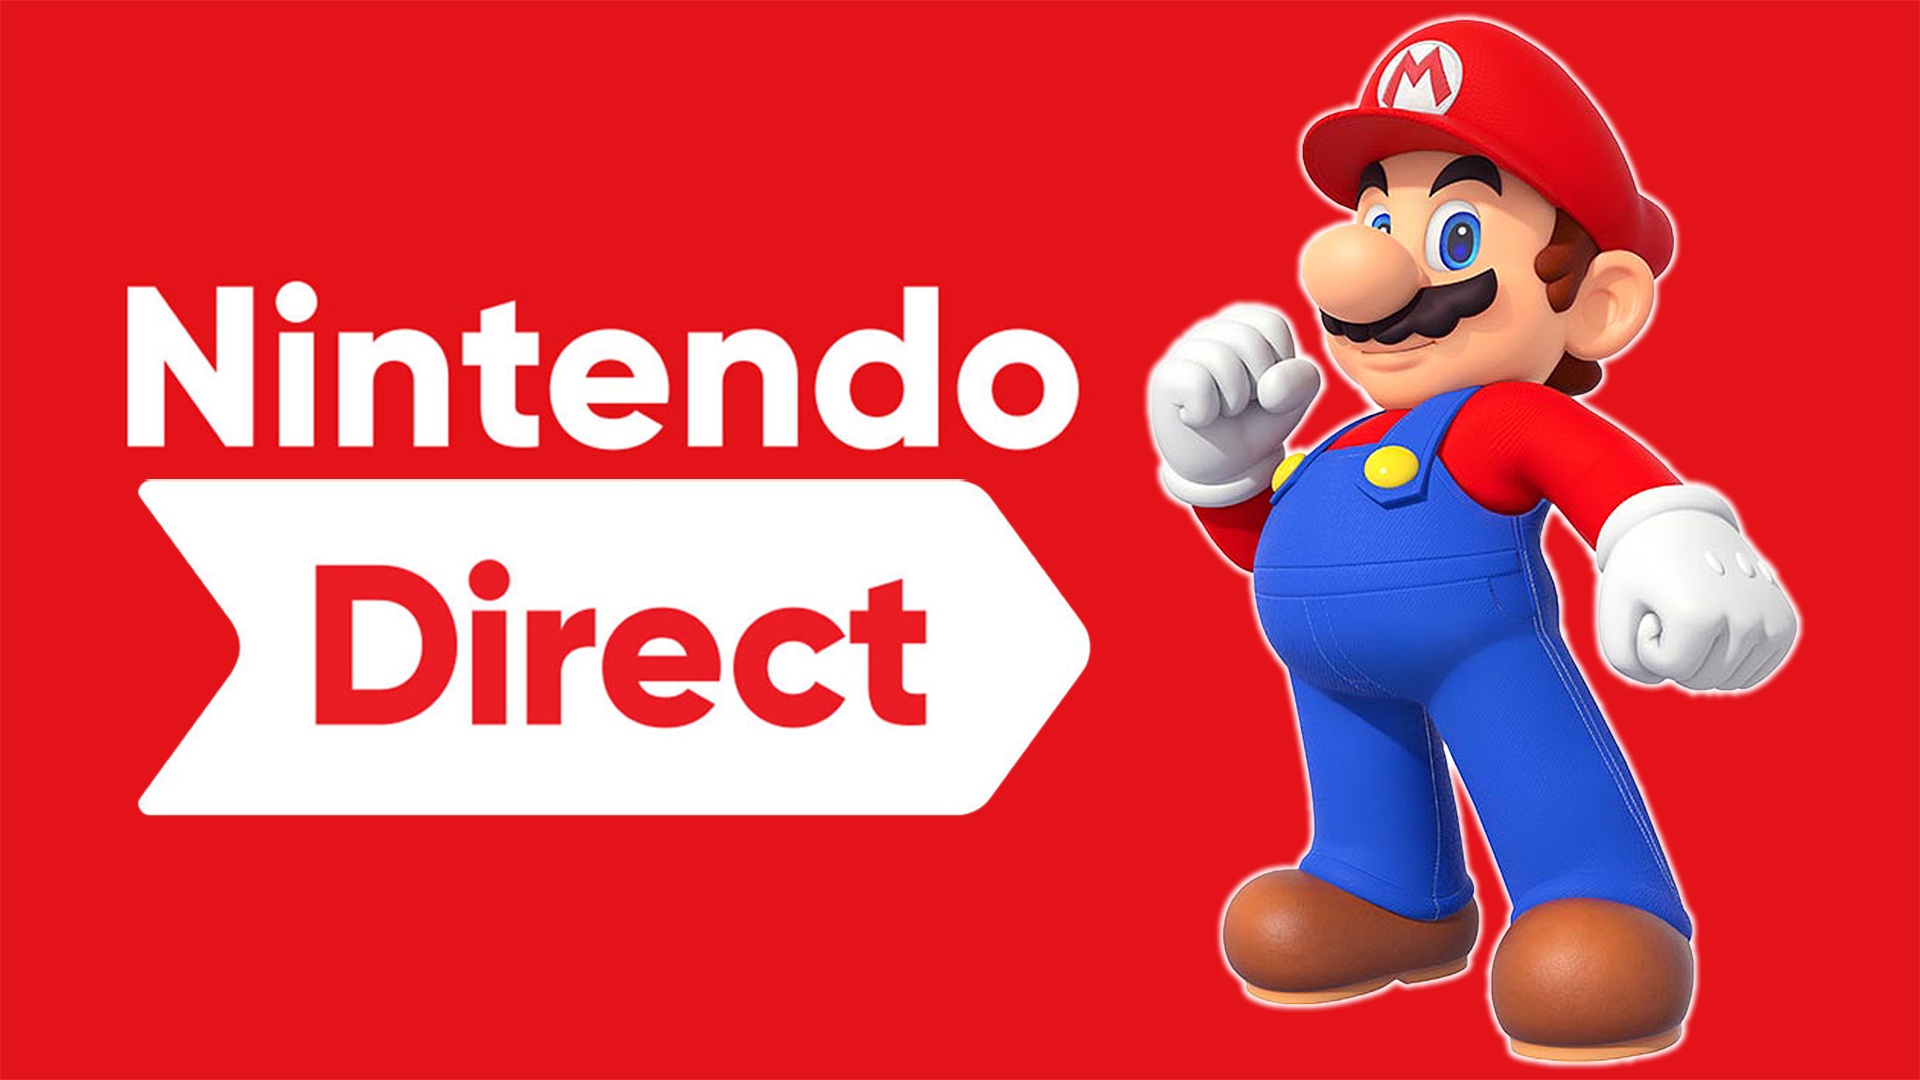 Nintendo Direct schon nächste Woche? Insider pocht auf Infos zur Switch-Show